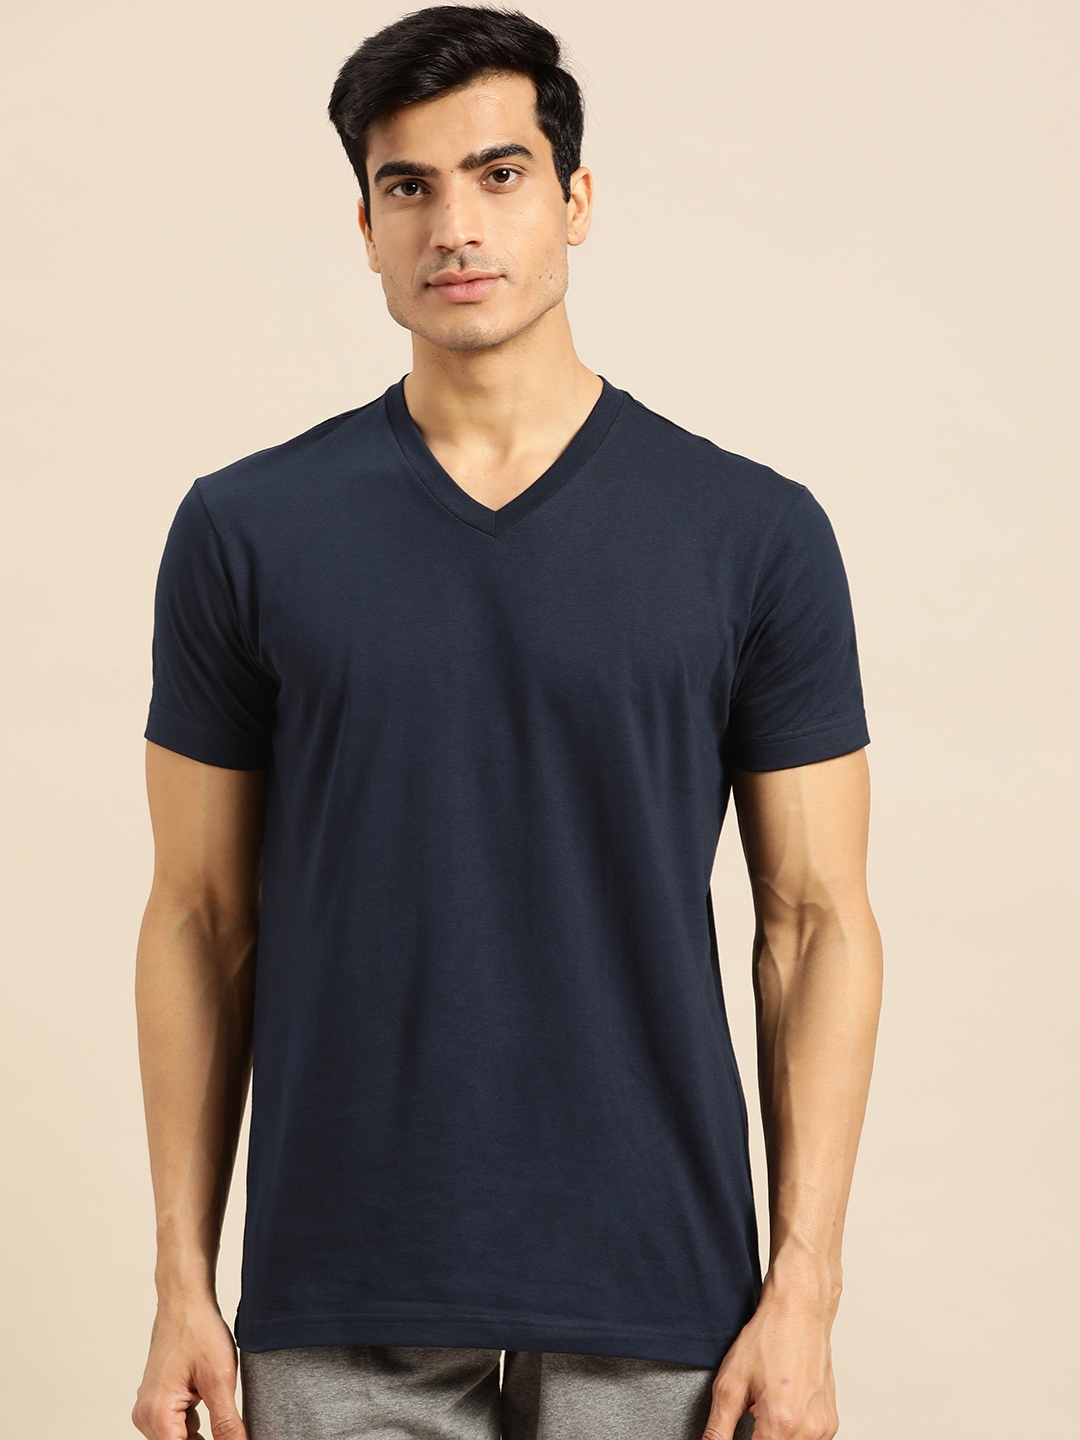 Buy Jockey Men Navy Blue Solid V Neck T Shirt - Tshirts for Men ...